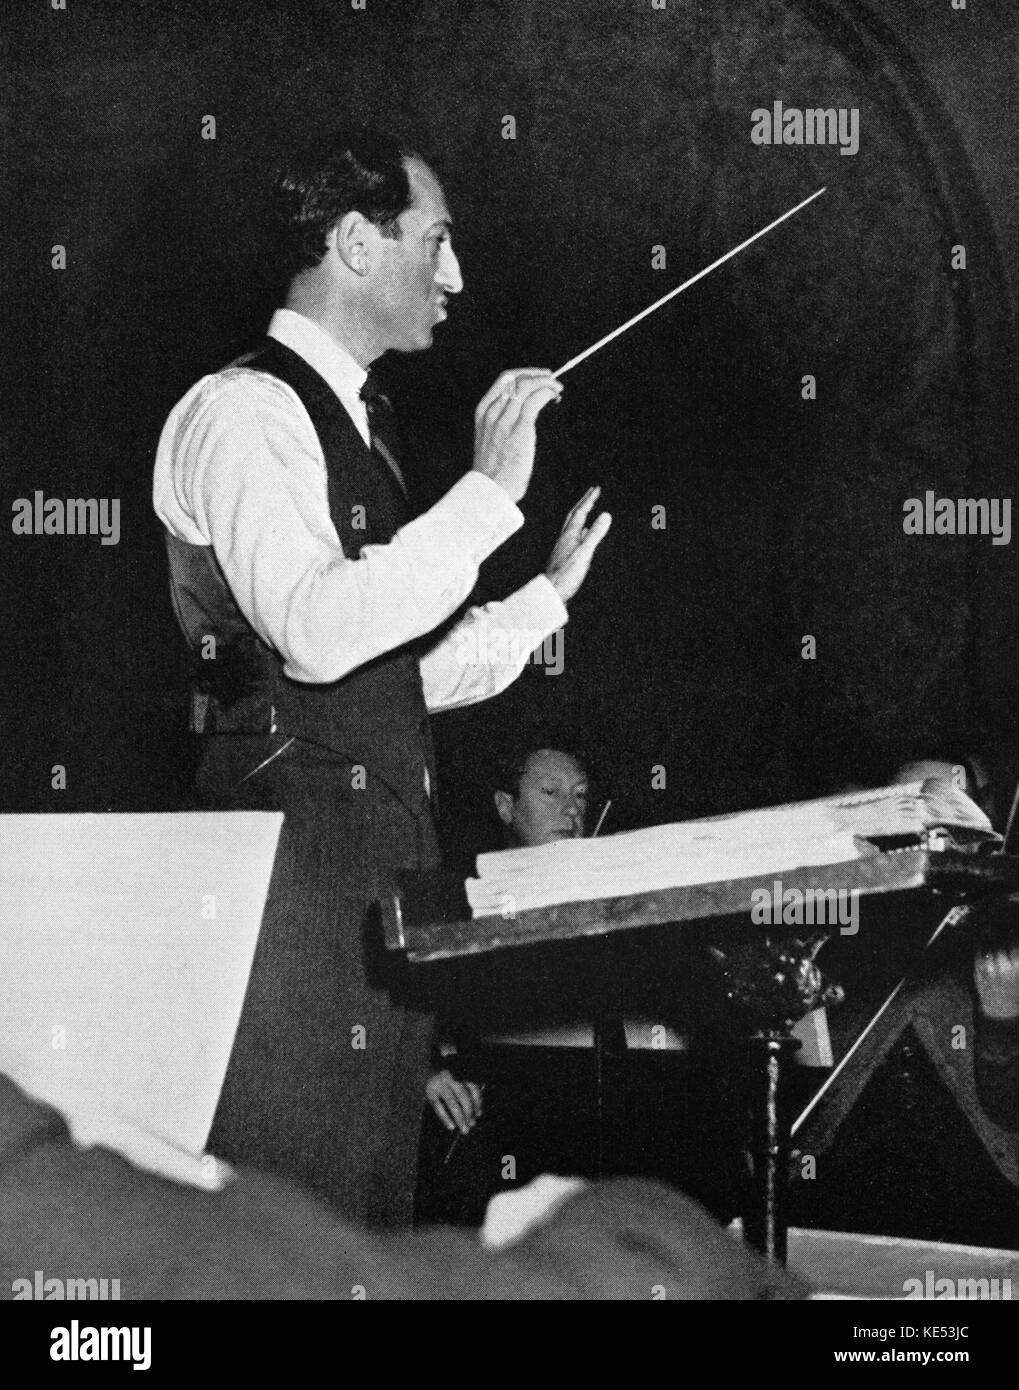 George Gershwin la realización de ensayo con orquesta. Pianista y compositor norteamericano, el 26 de septiembre de 1898 - 11 de julio de 1937 Foto de stock